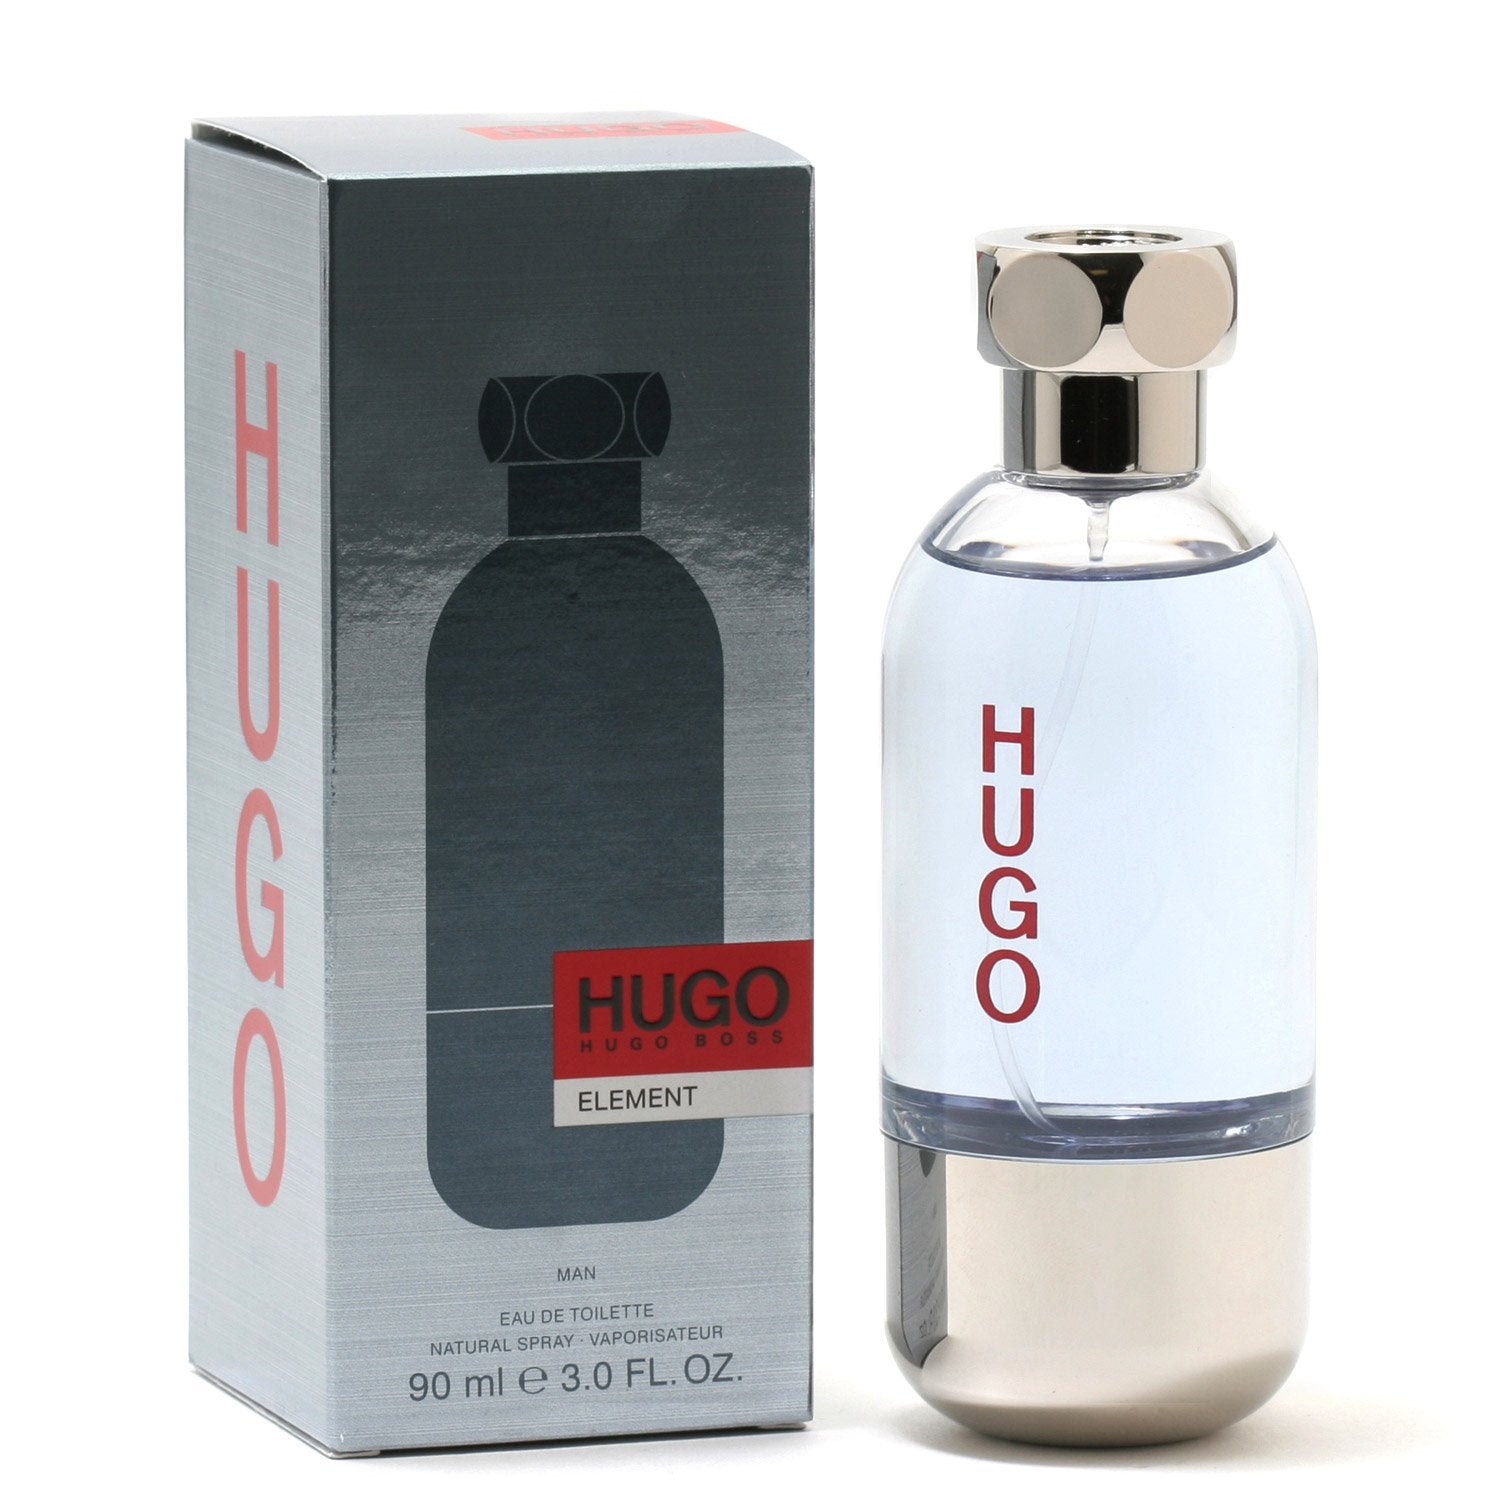 HUGO ELEMENT FOR MEN BY HUGO BOSS - EAU DE TOILETTE SPRAY – Fragrance Room